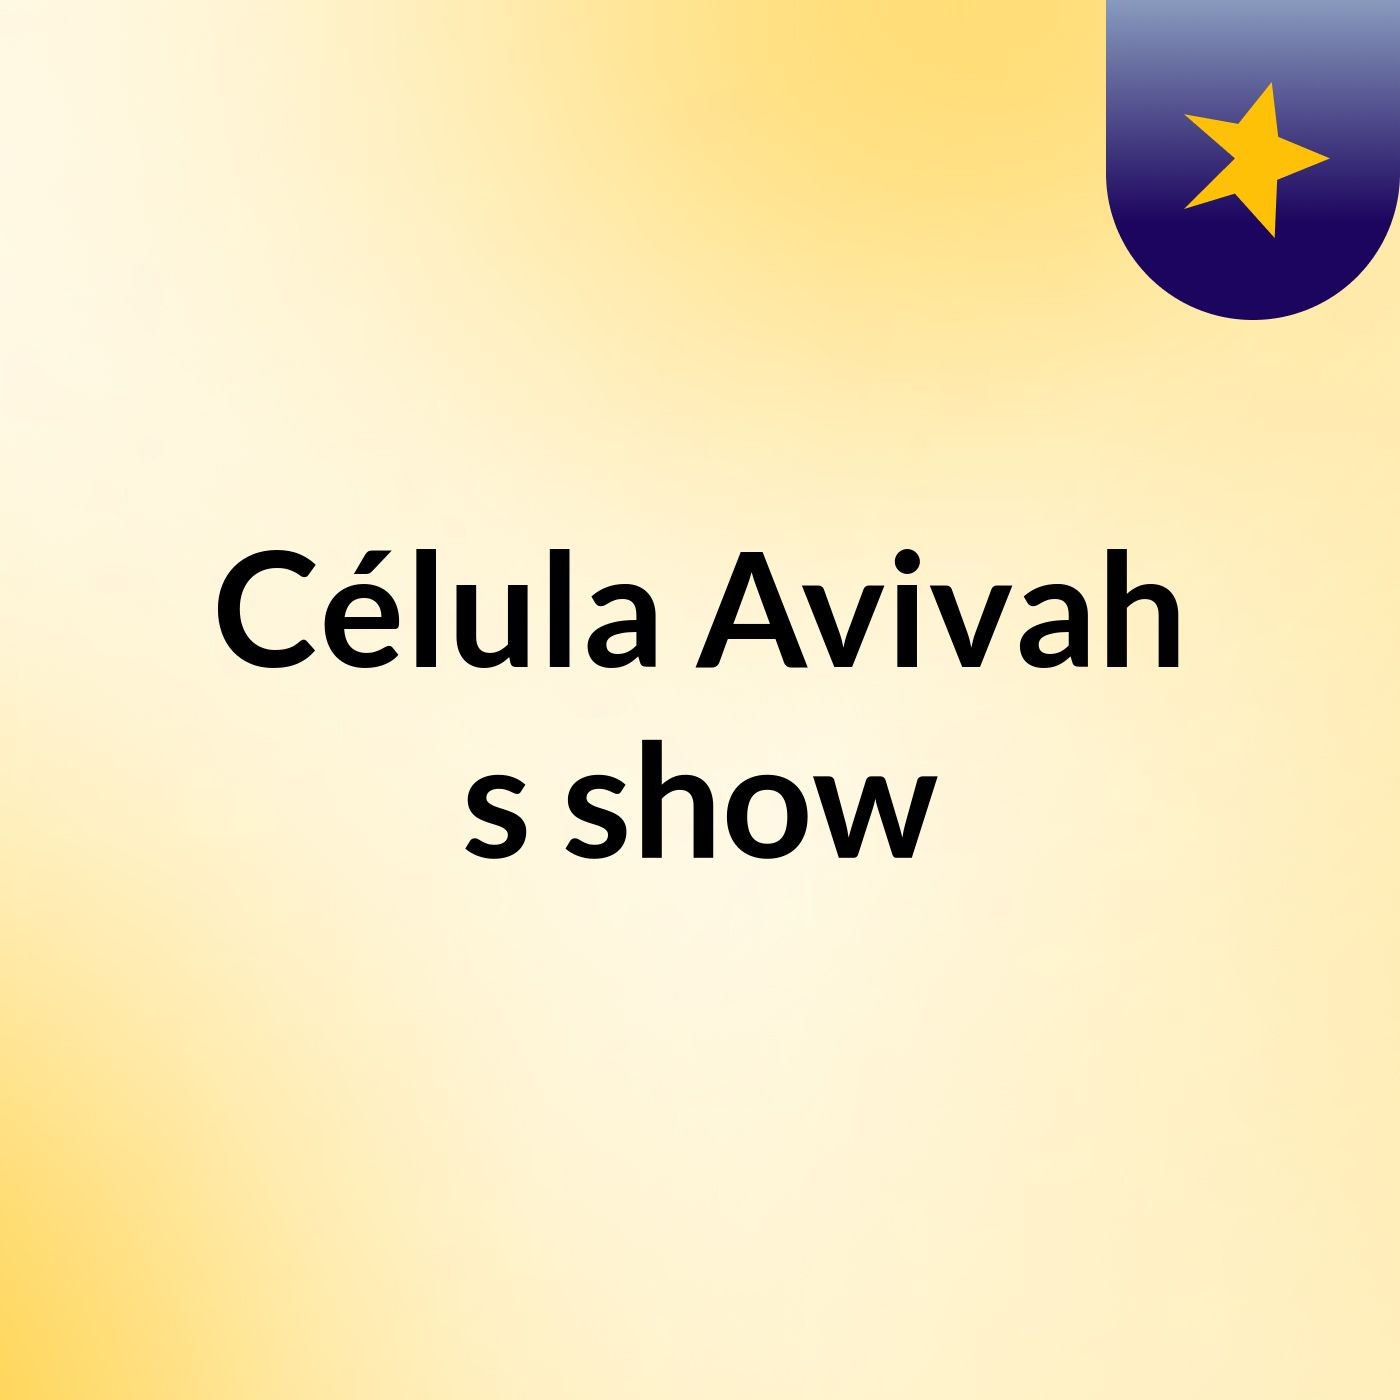 Célula Avivah's show